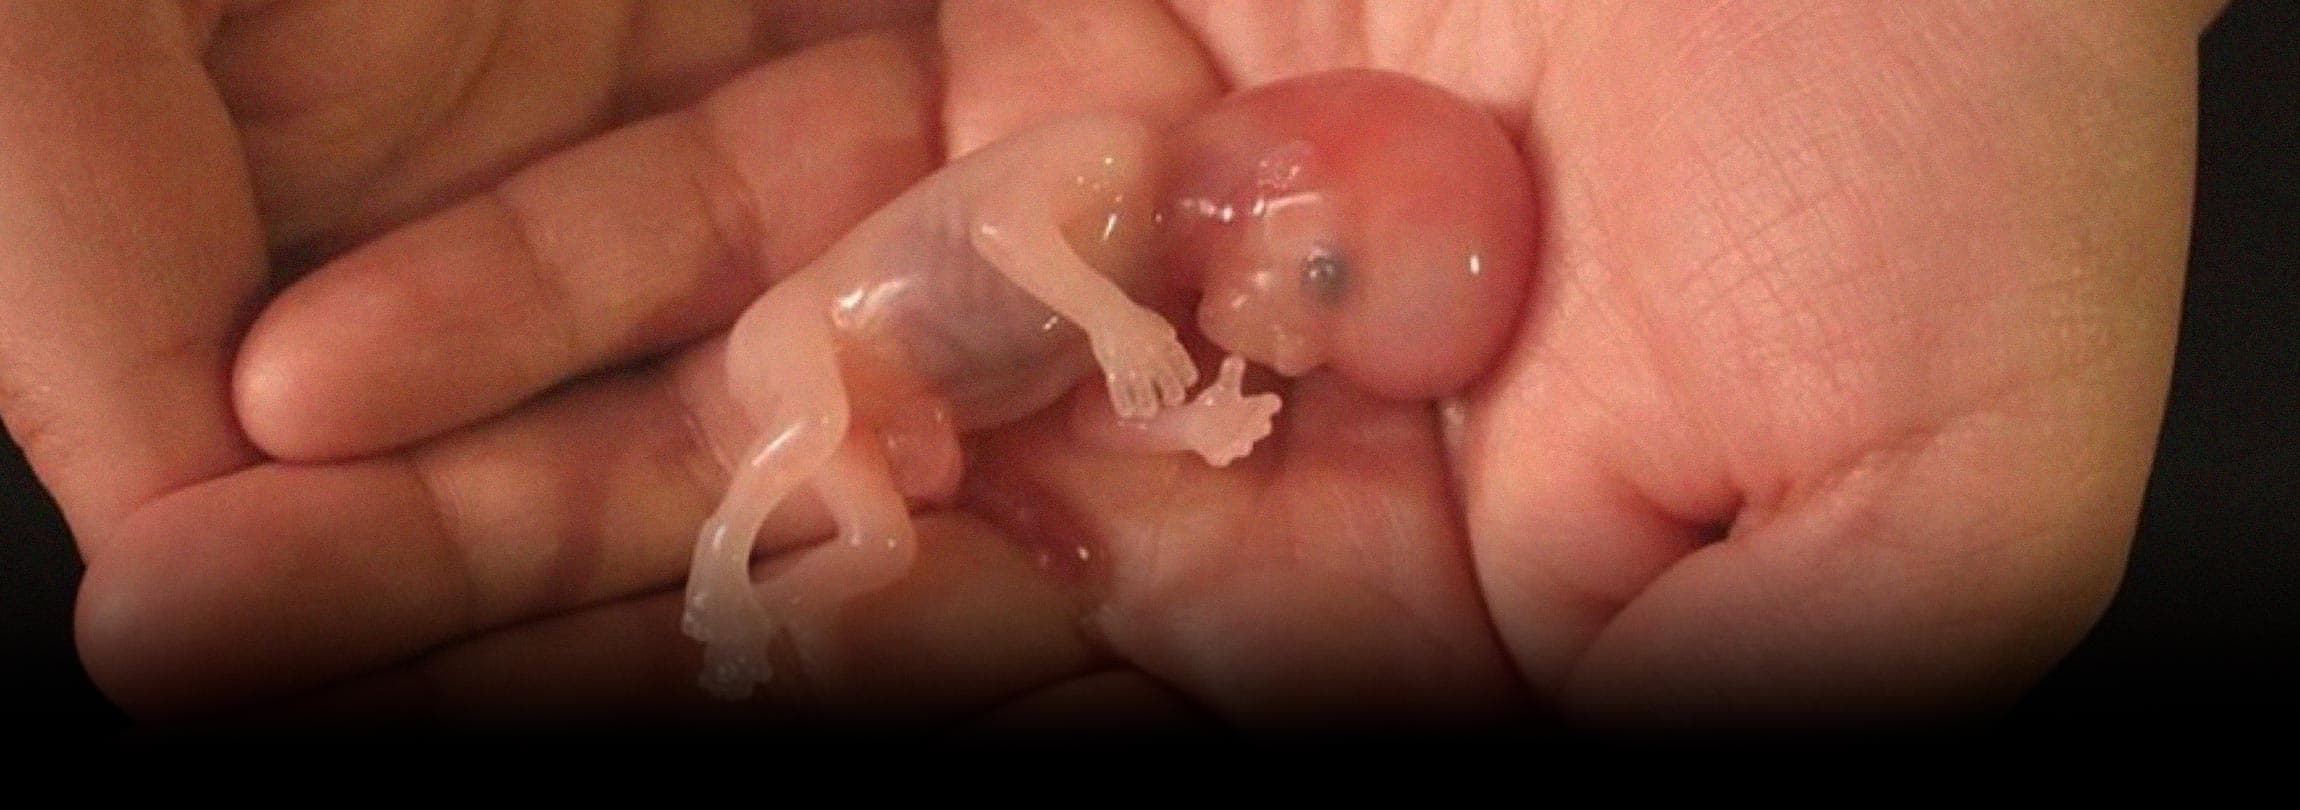 A mentira do “aborto seguro”